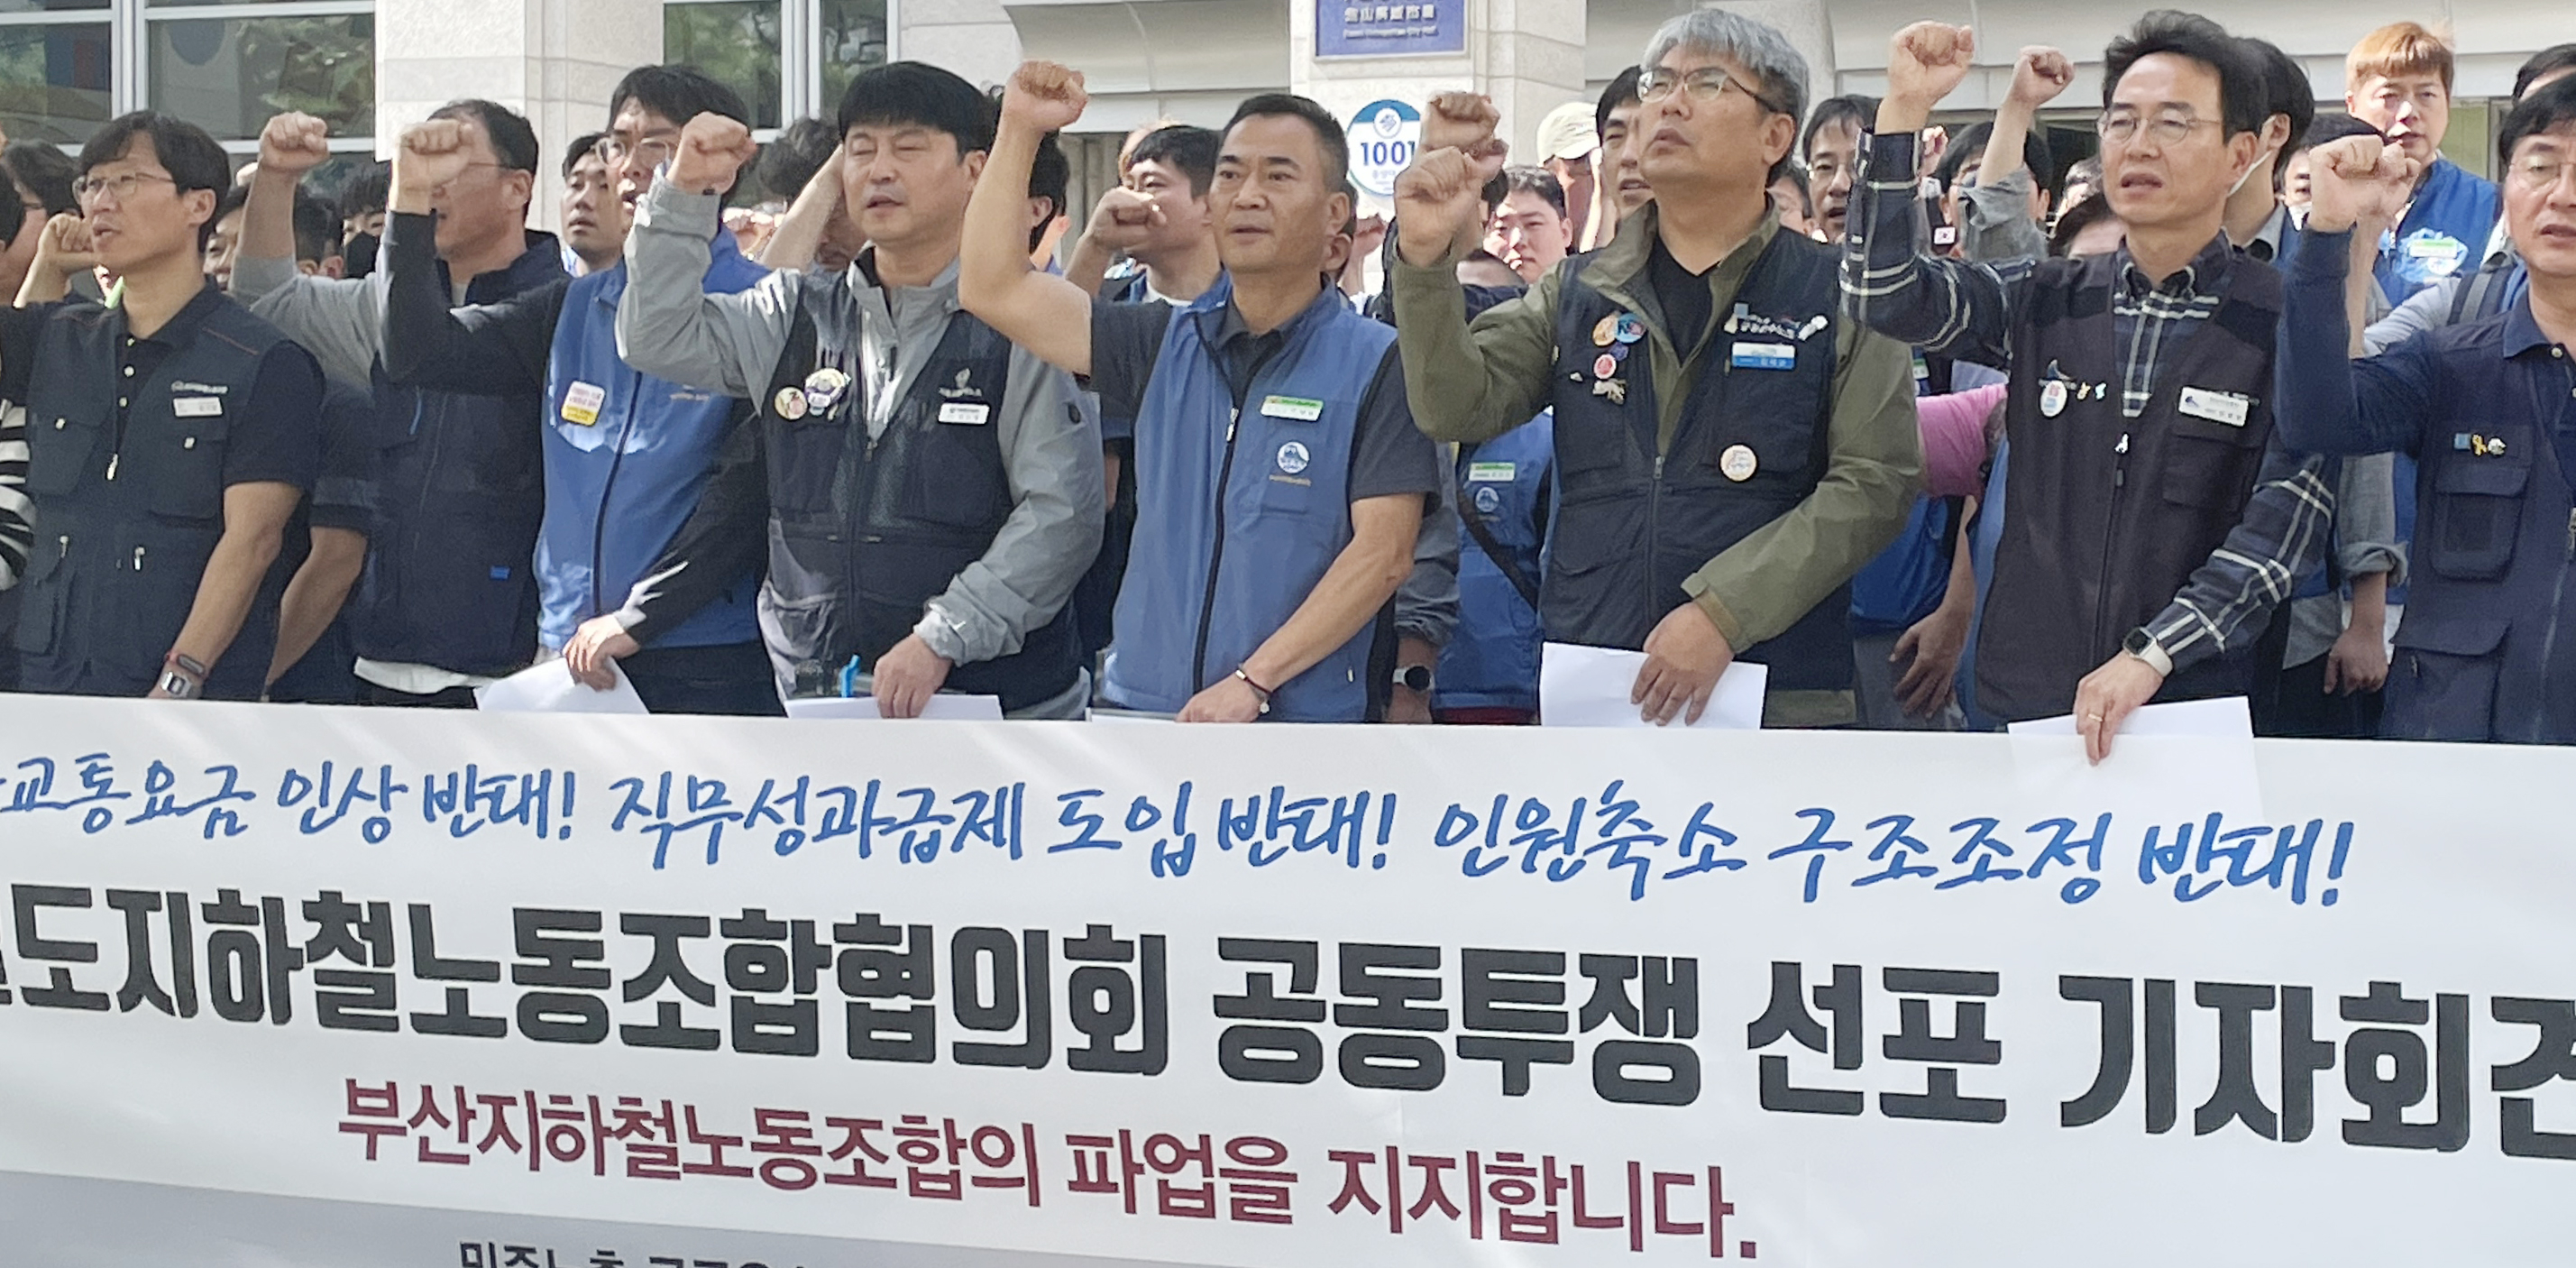 “부산지하철노조 파업 지지한다”